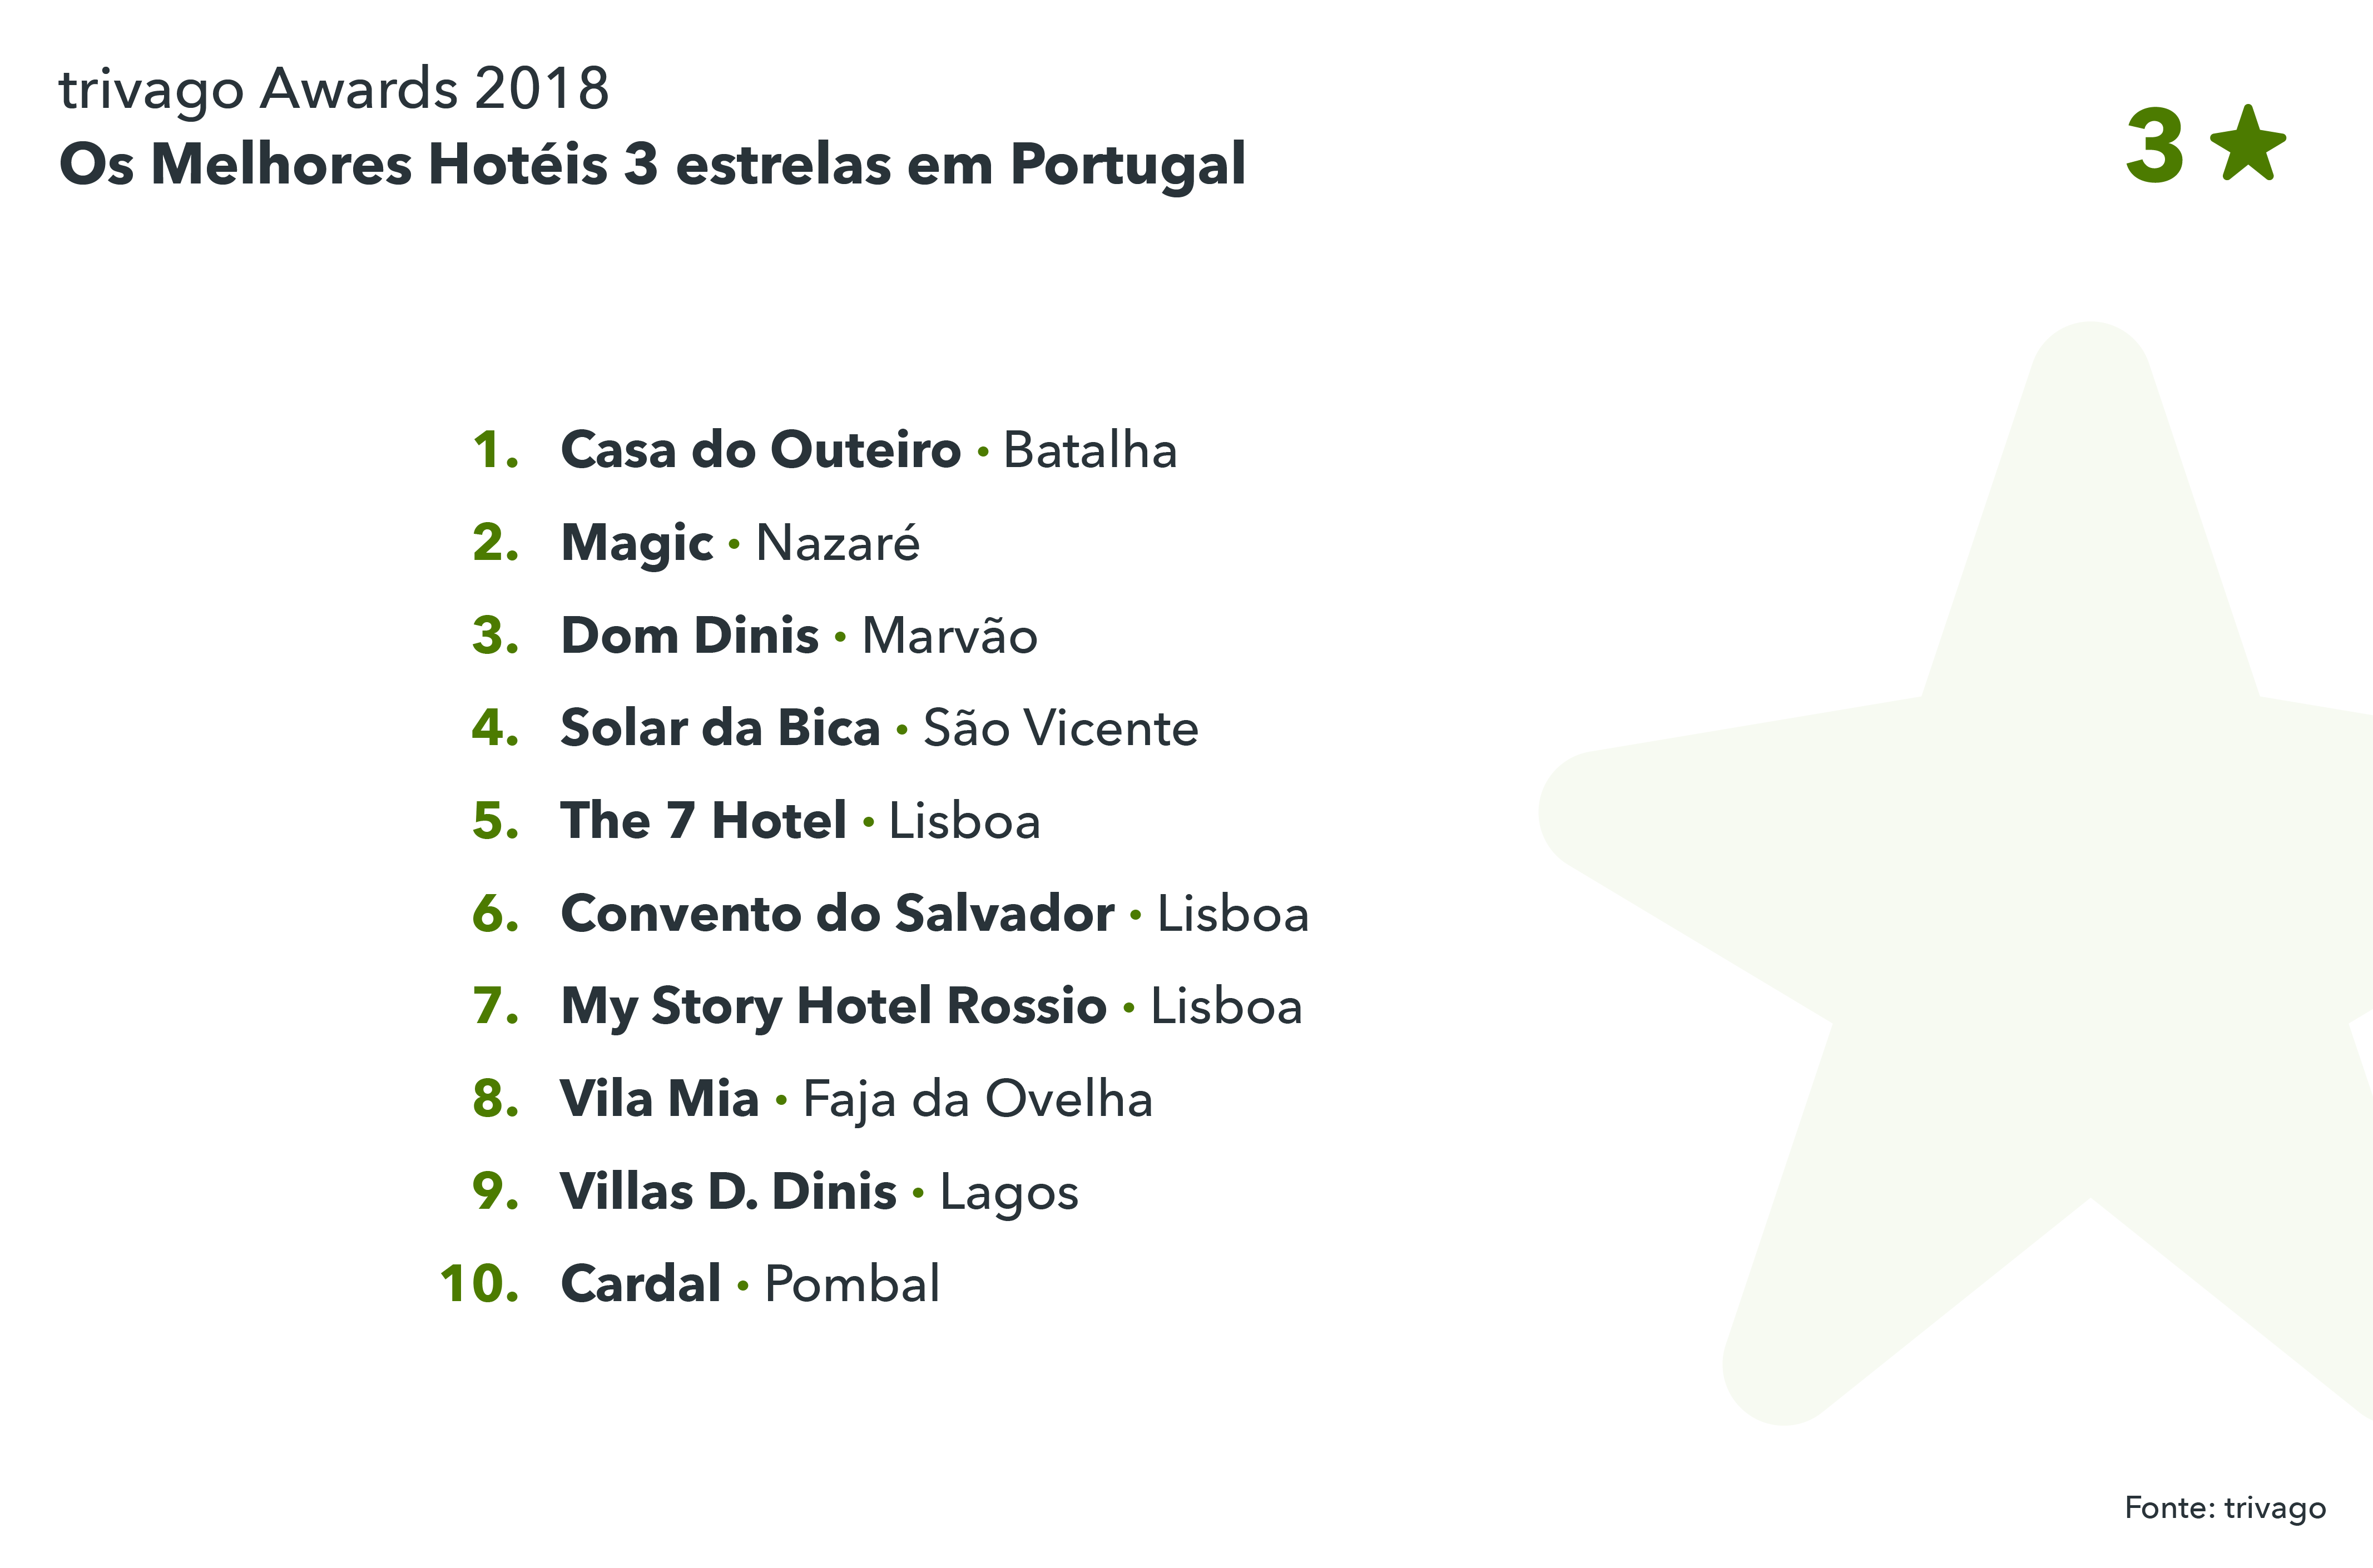 Os melhores hotéis 3 estrelas em Portugal